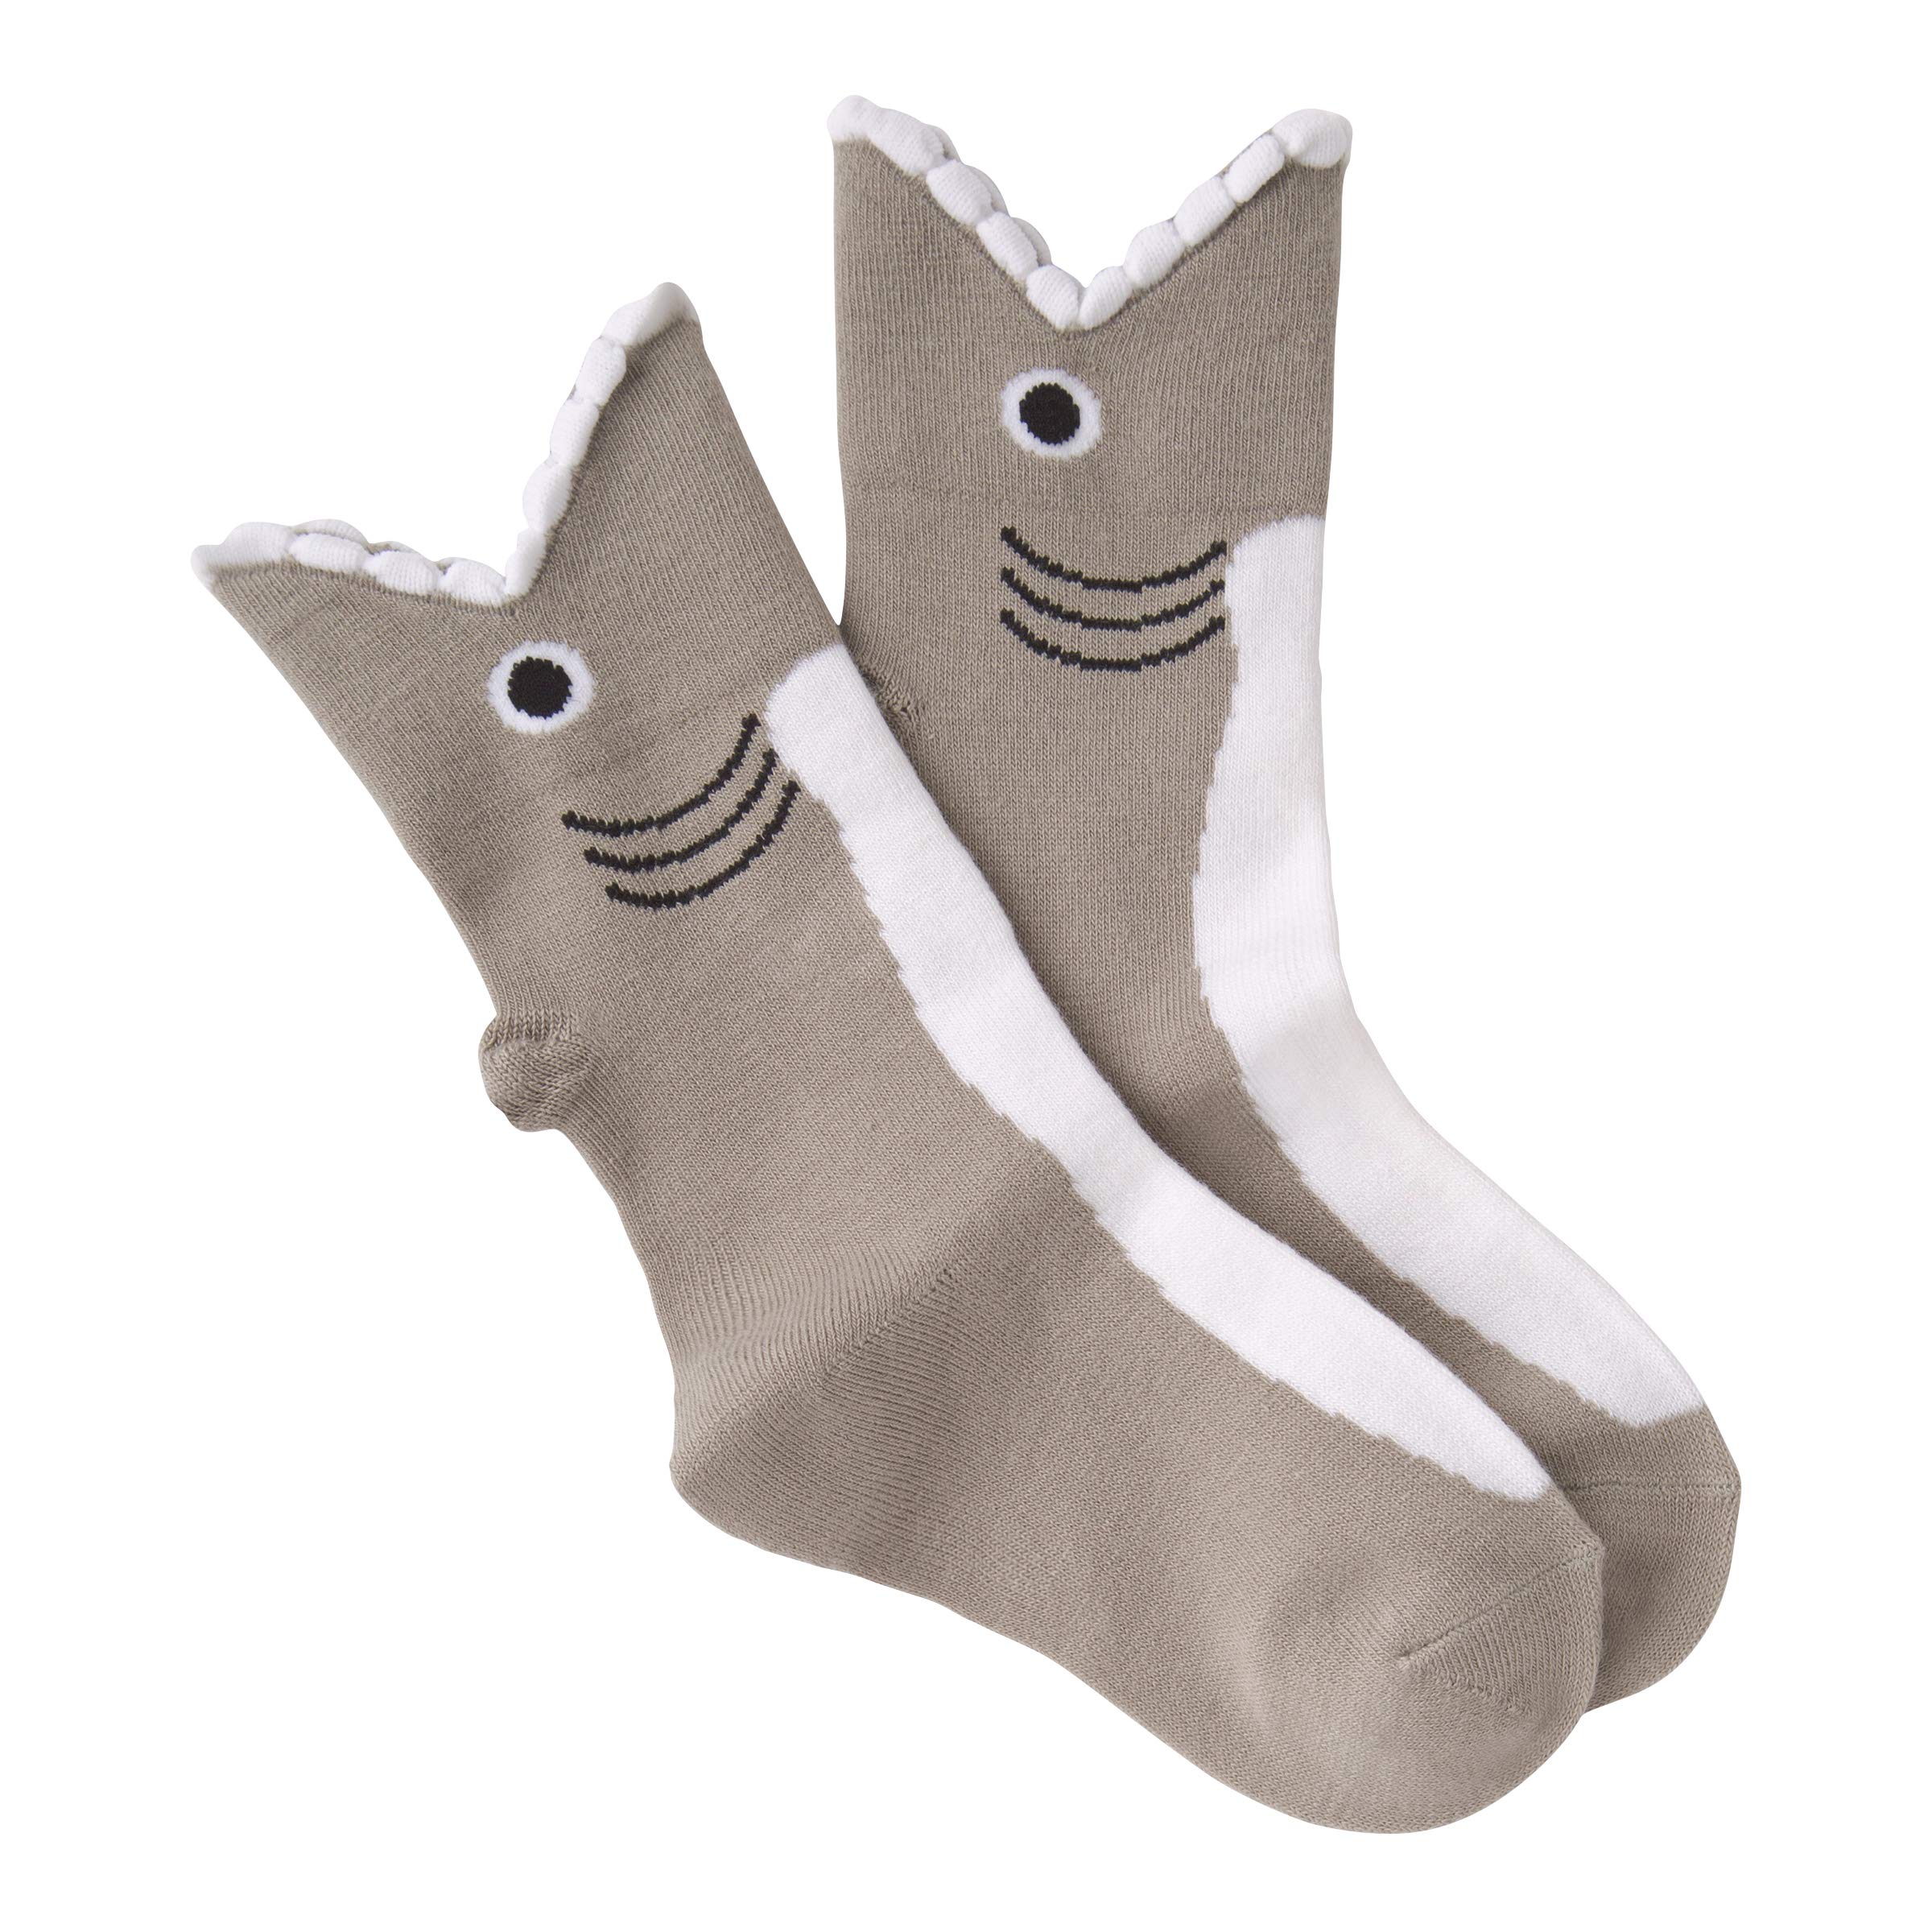 K. Bell Socks Kids' Fun Novelty Crew Socks-Unisex 1 Pair Pack